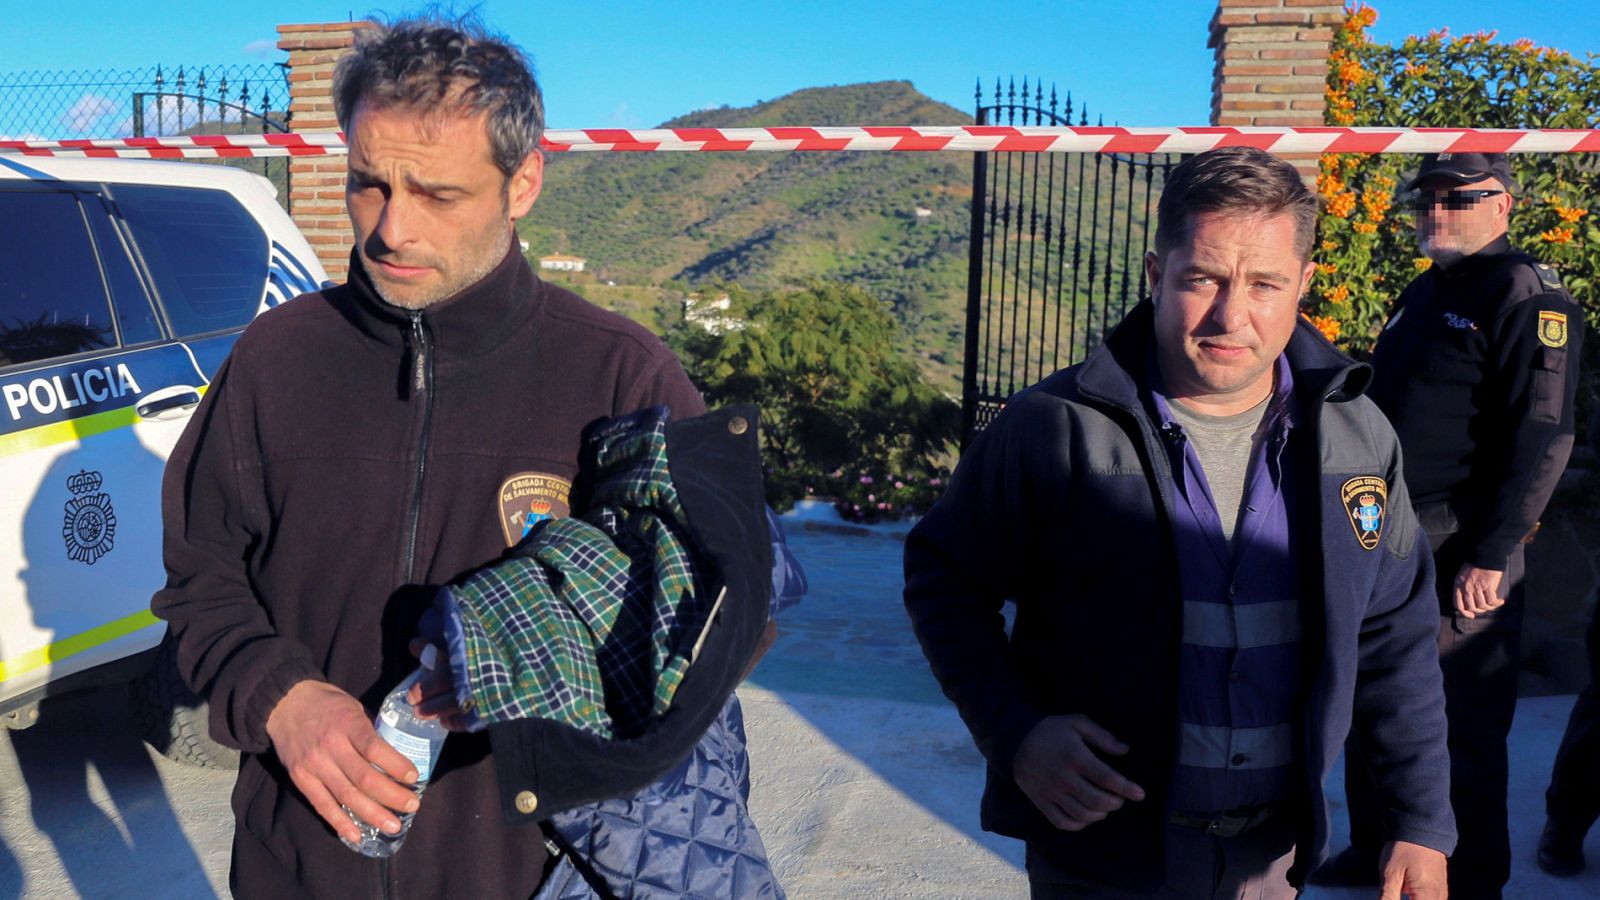 Mineros rescate Julen: La brigada minera de Asturias, un equipo de expertos preparados para condiciones extremas - RTVE.es